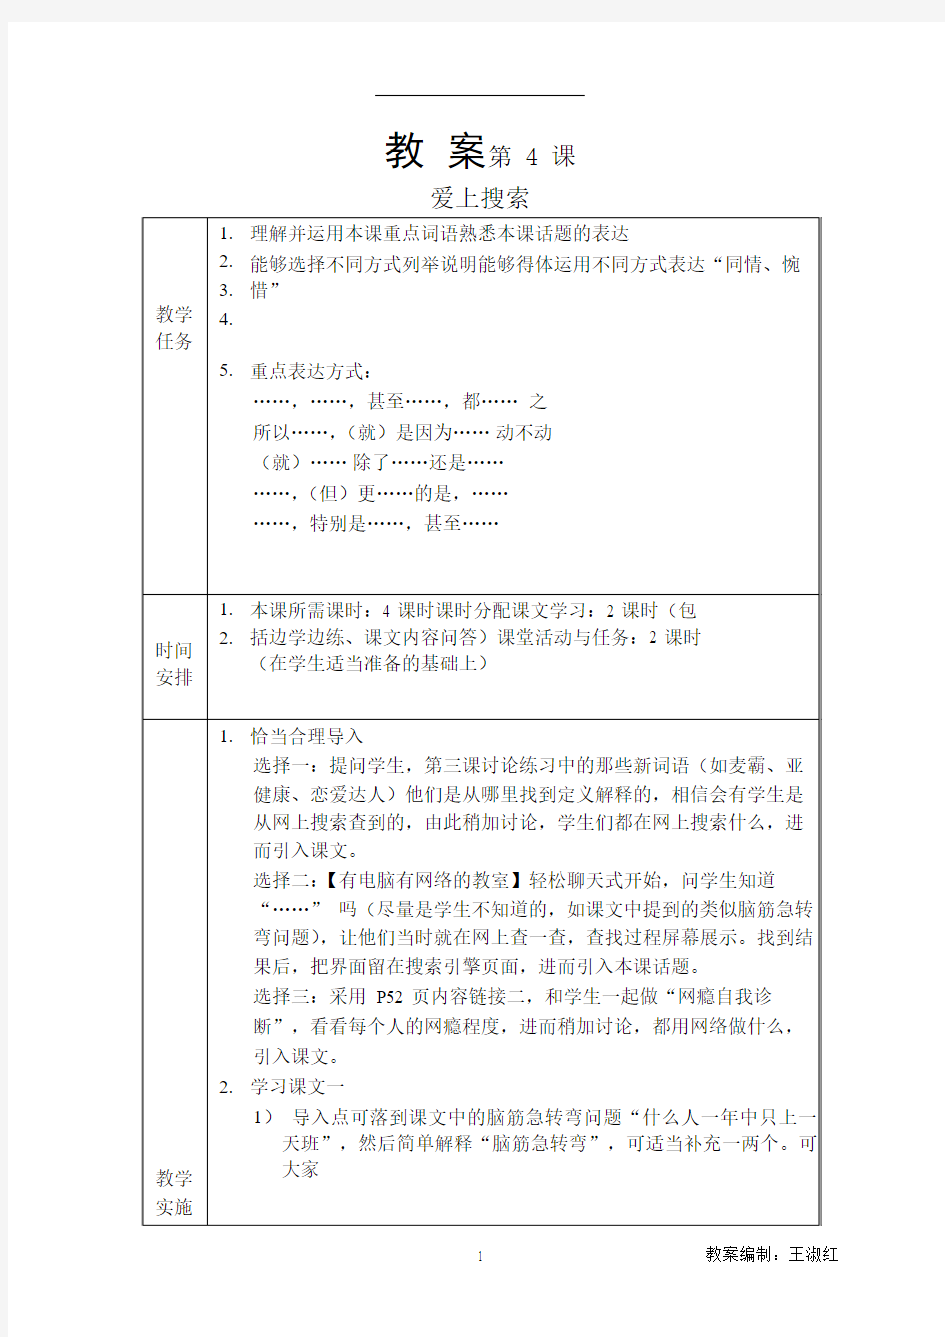 发展汉语(第二版)高级口语Ⅰ-4教案4第四课 爱上搜索